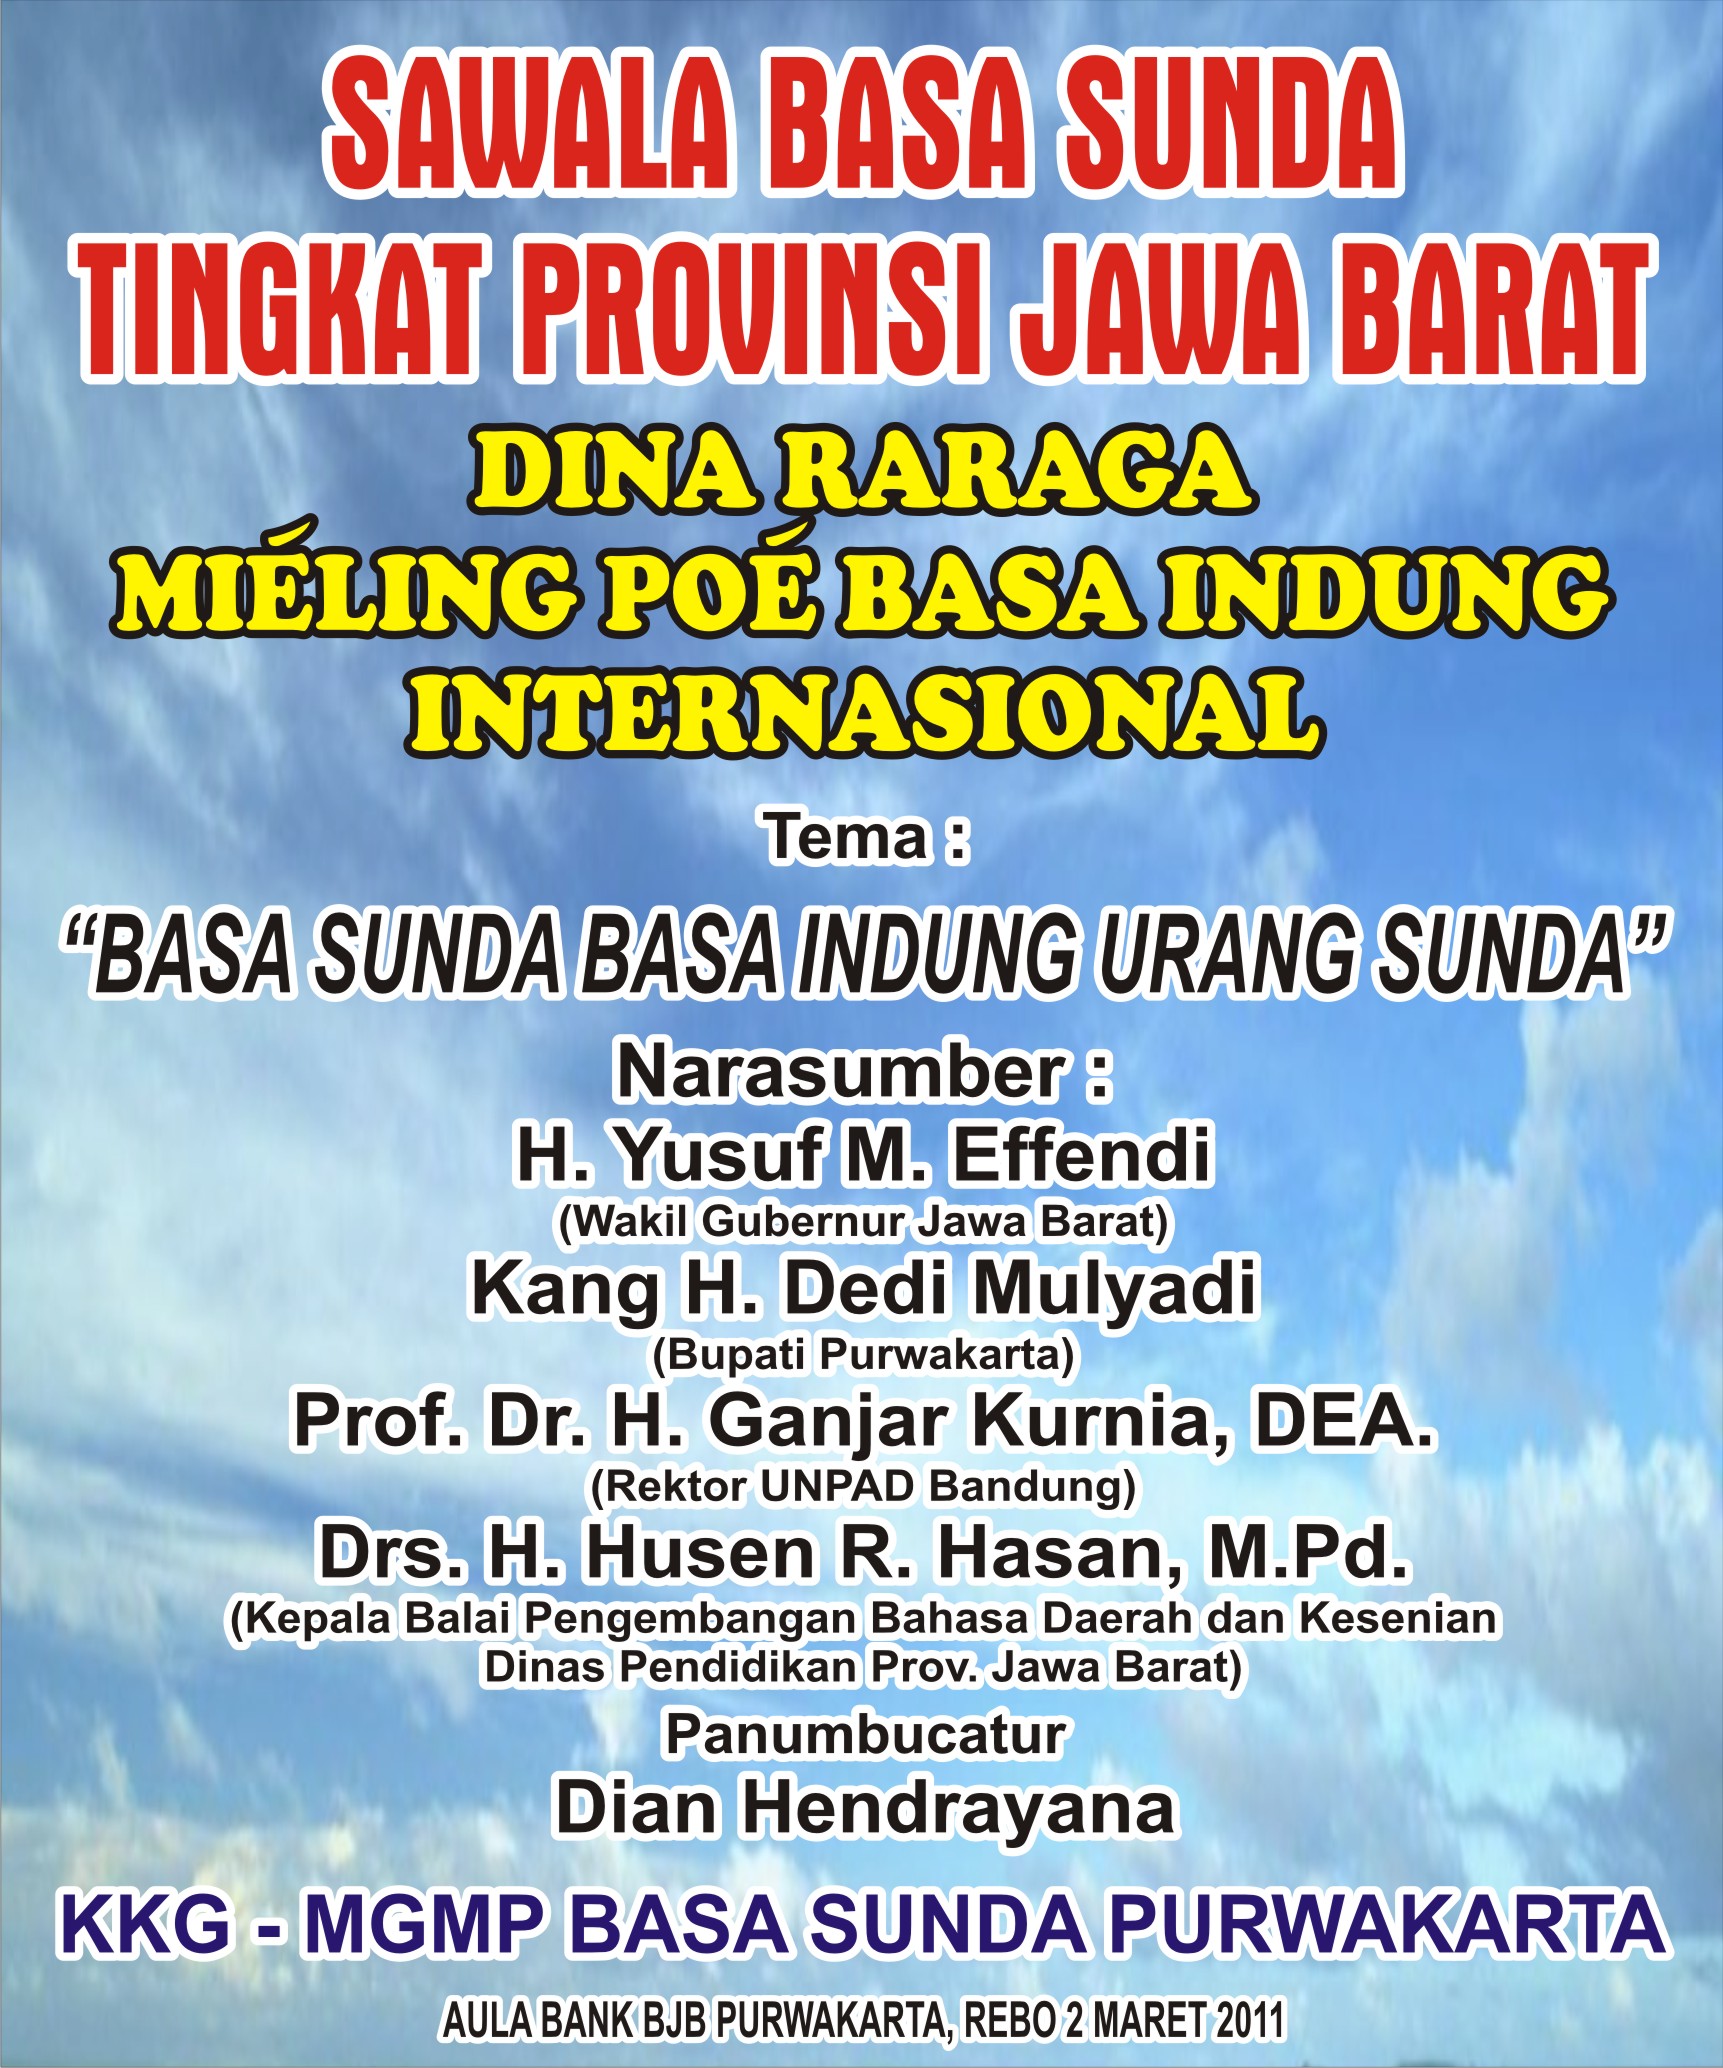 Sawala Basa Sunda Mgmp Basa Sunda Purwakarta